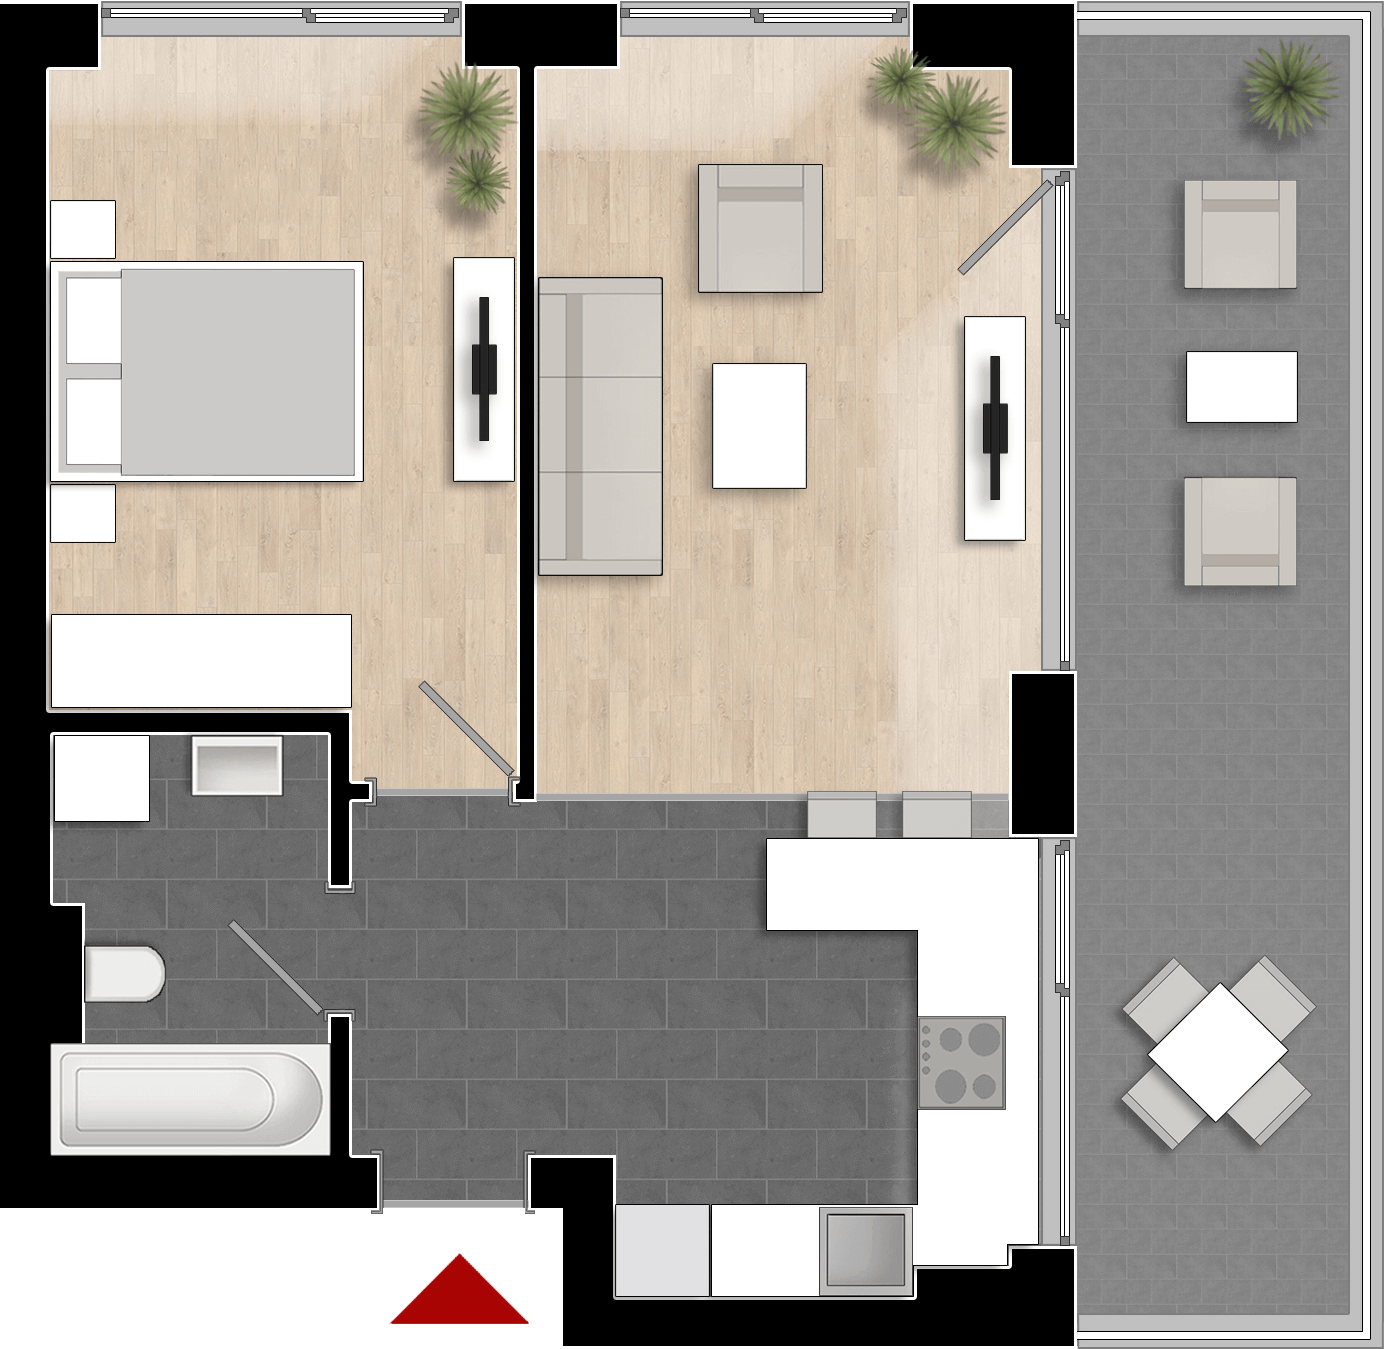  Apartament 809, Tip de apartament 1B cu 2 camere 